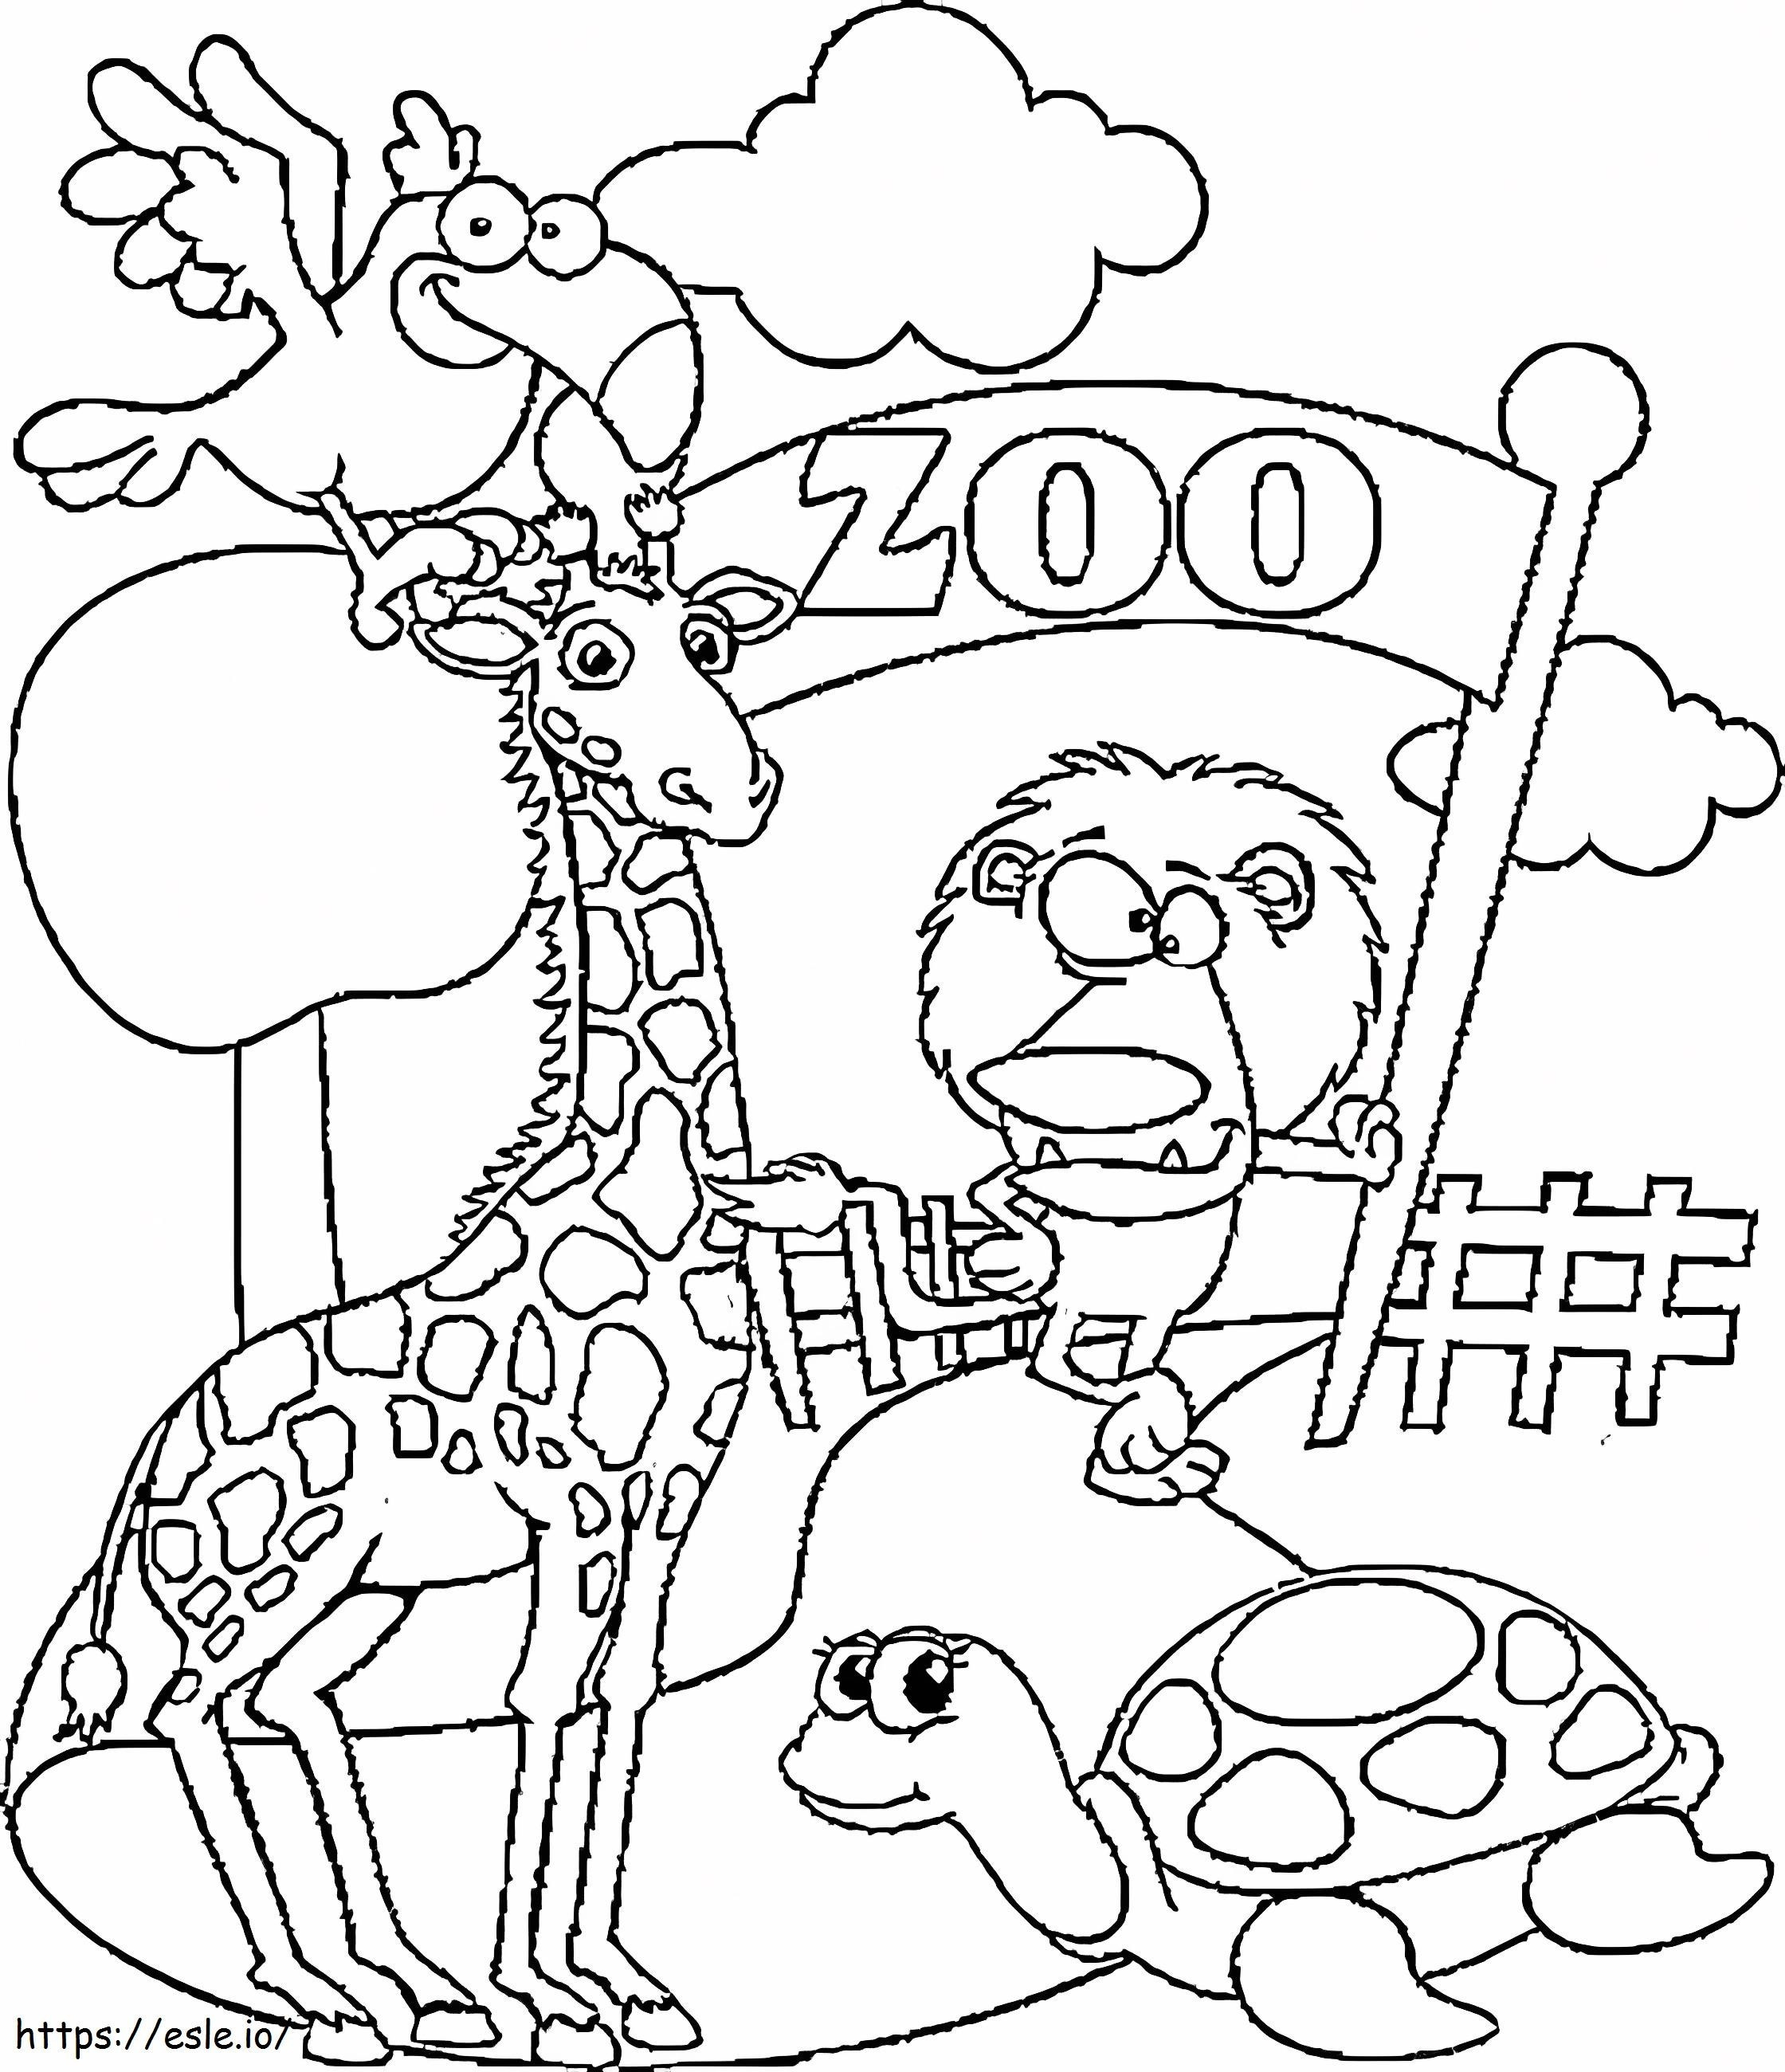 Animali Divertenti Allo Zoo da colorare